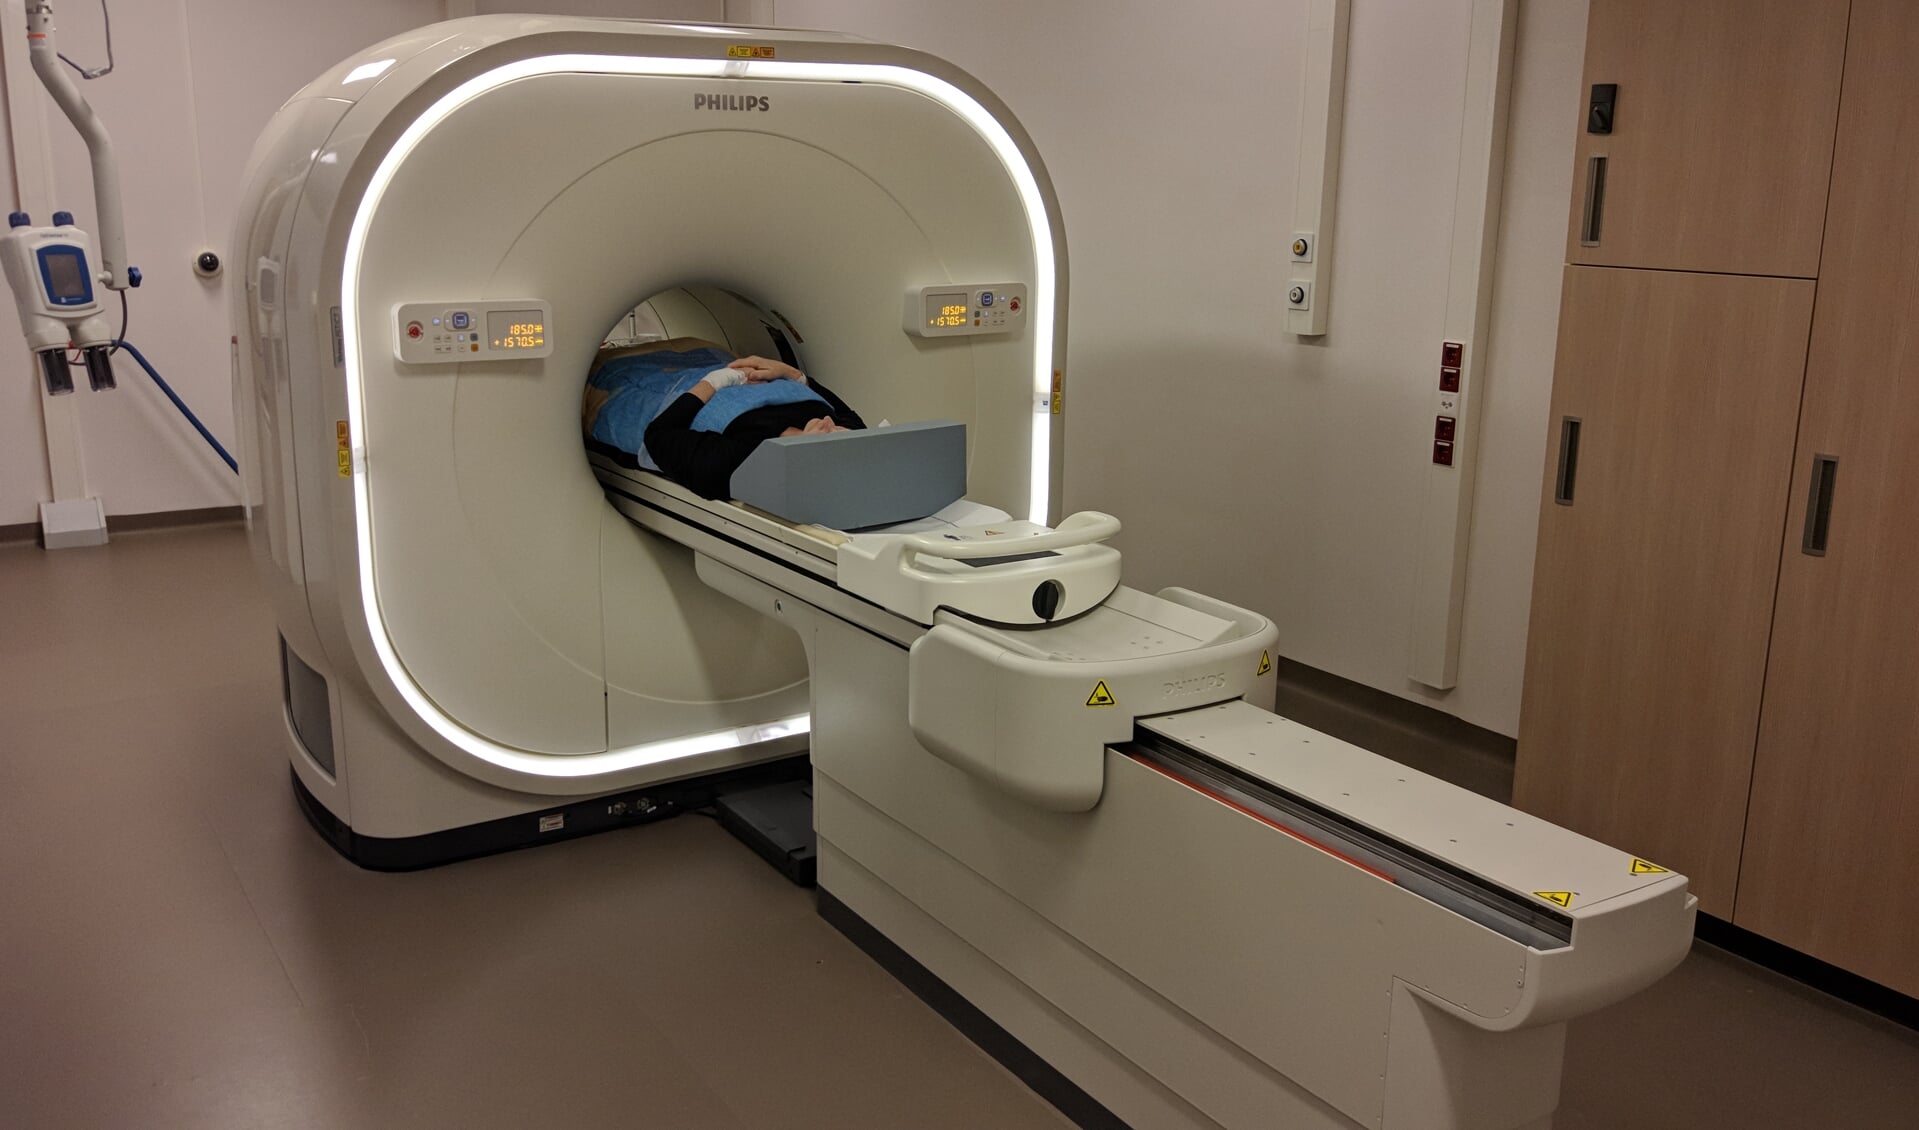 Mevrouw van der Rassel-van der Kleij was onder de indruk van de imposante PET-CT scanner. (Foto: PR)